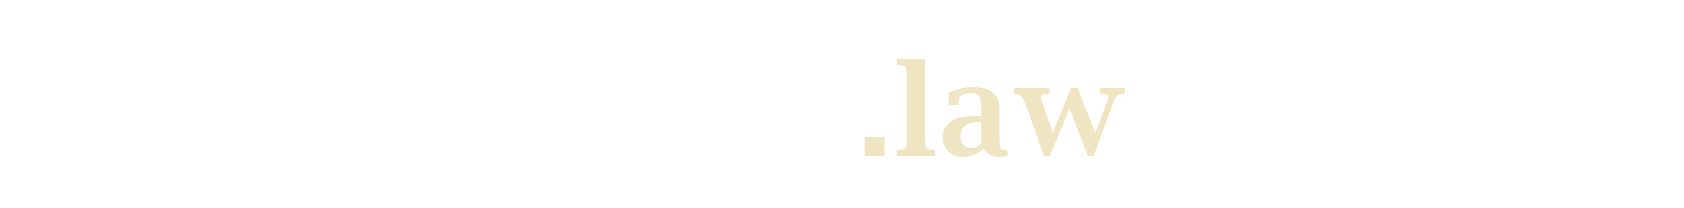 test2.verteidiger.law Logo